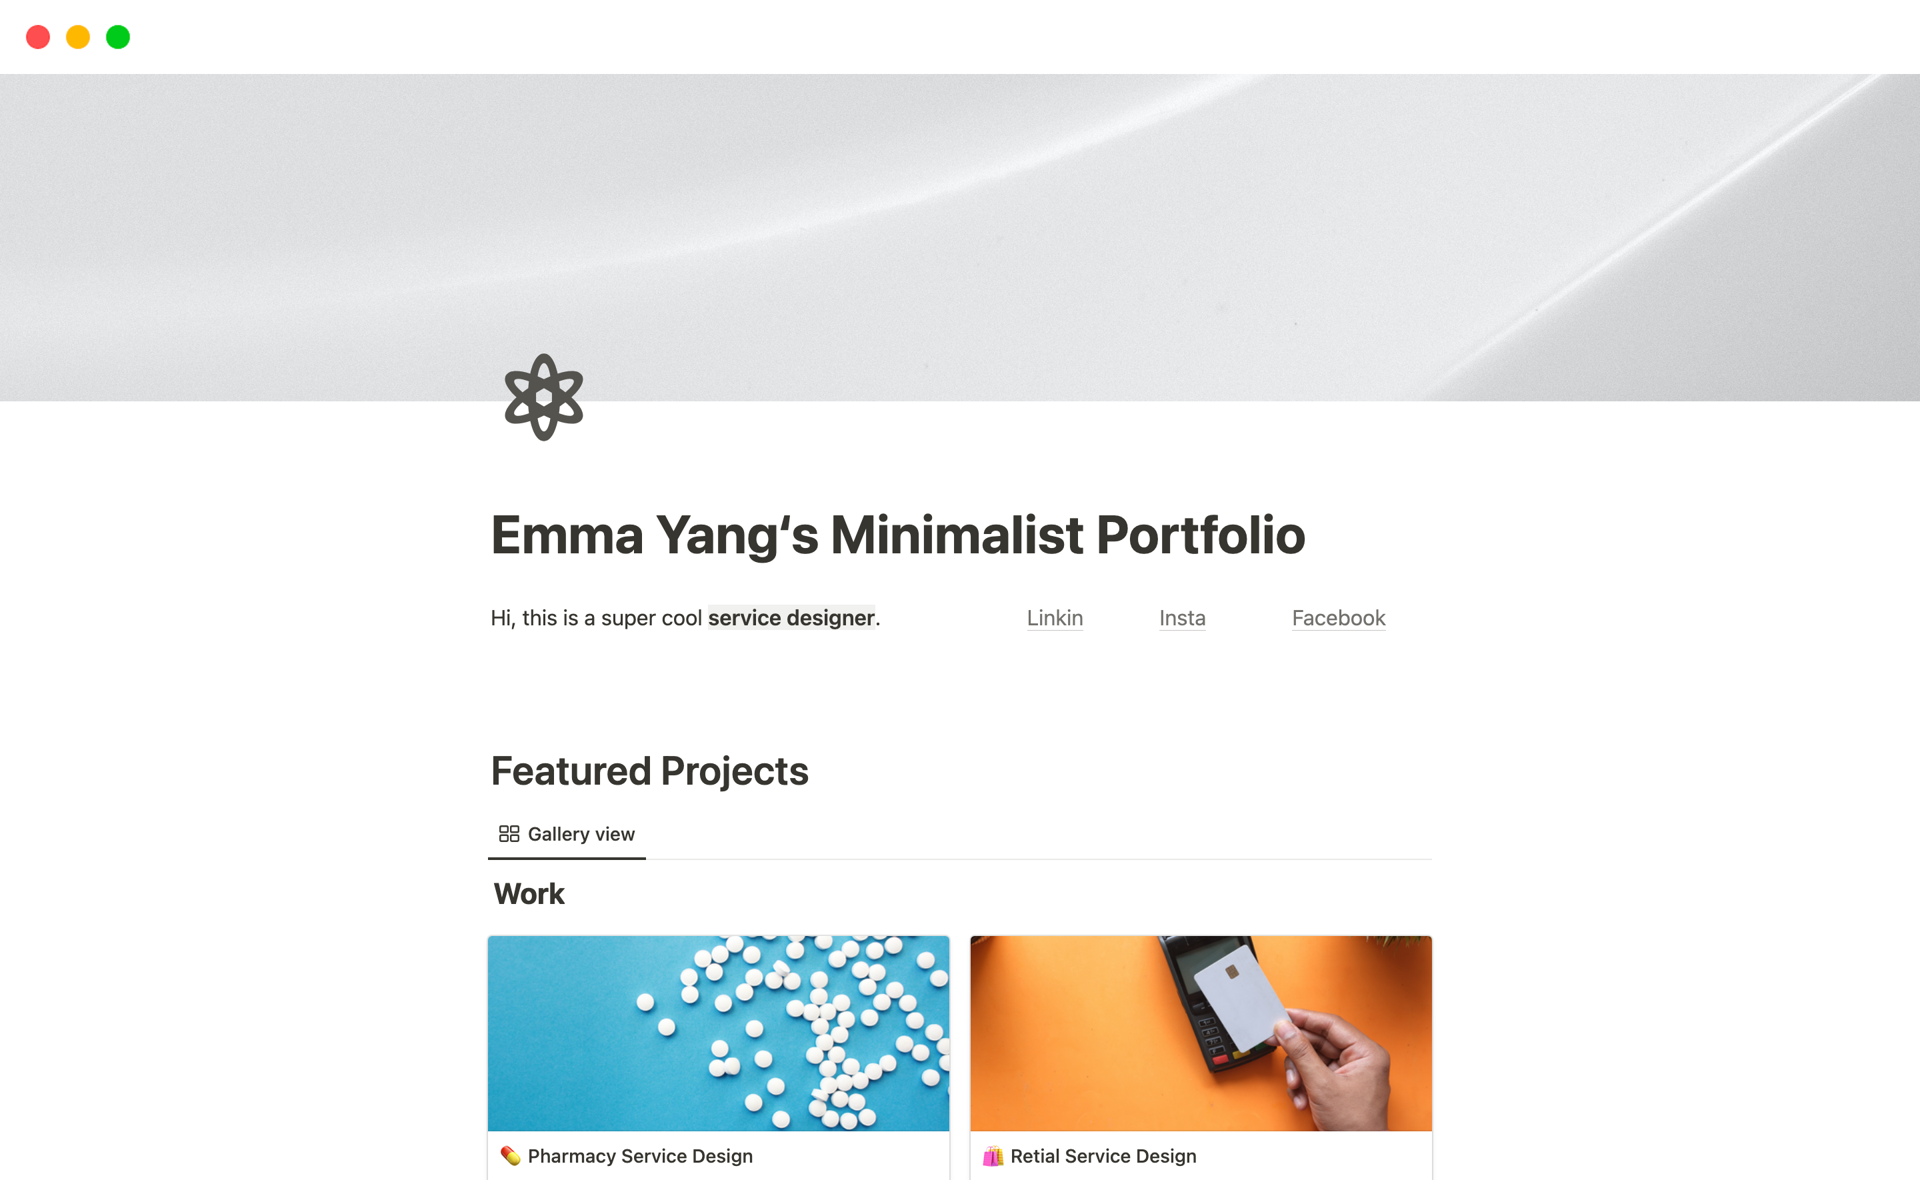 Vista previa de una plantilla para Emma Yang‘s Minimalist Portfolio